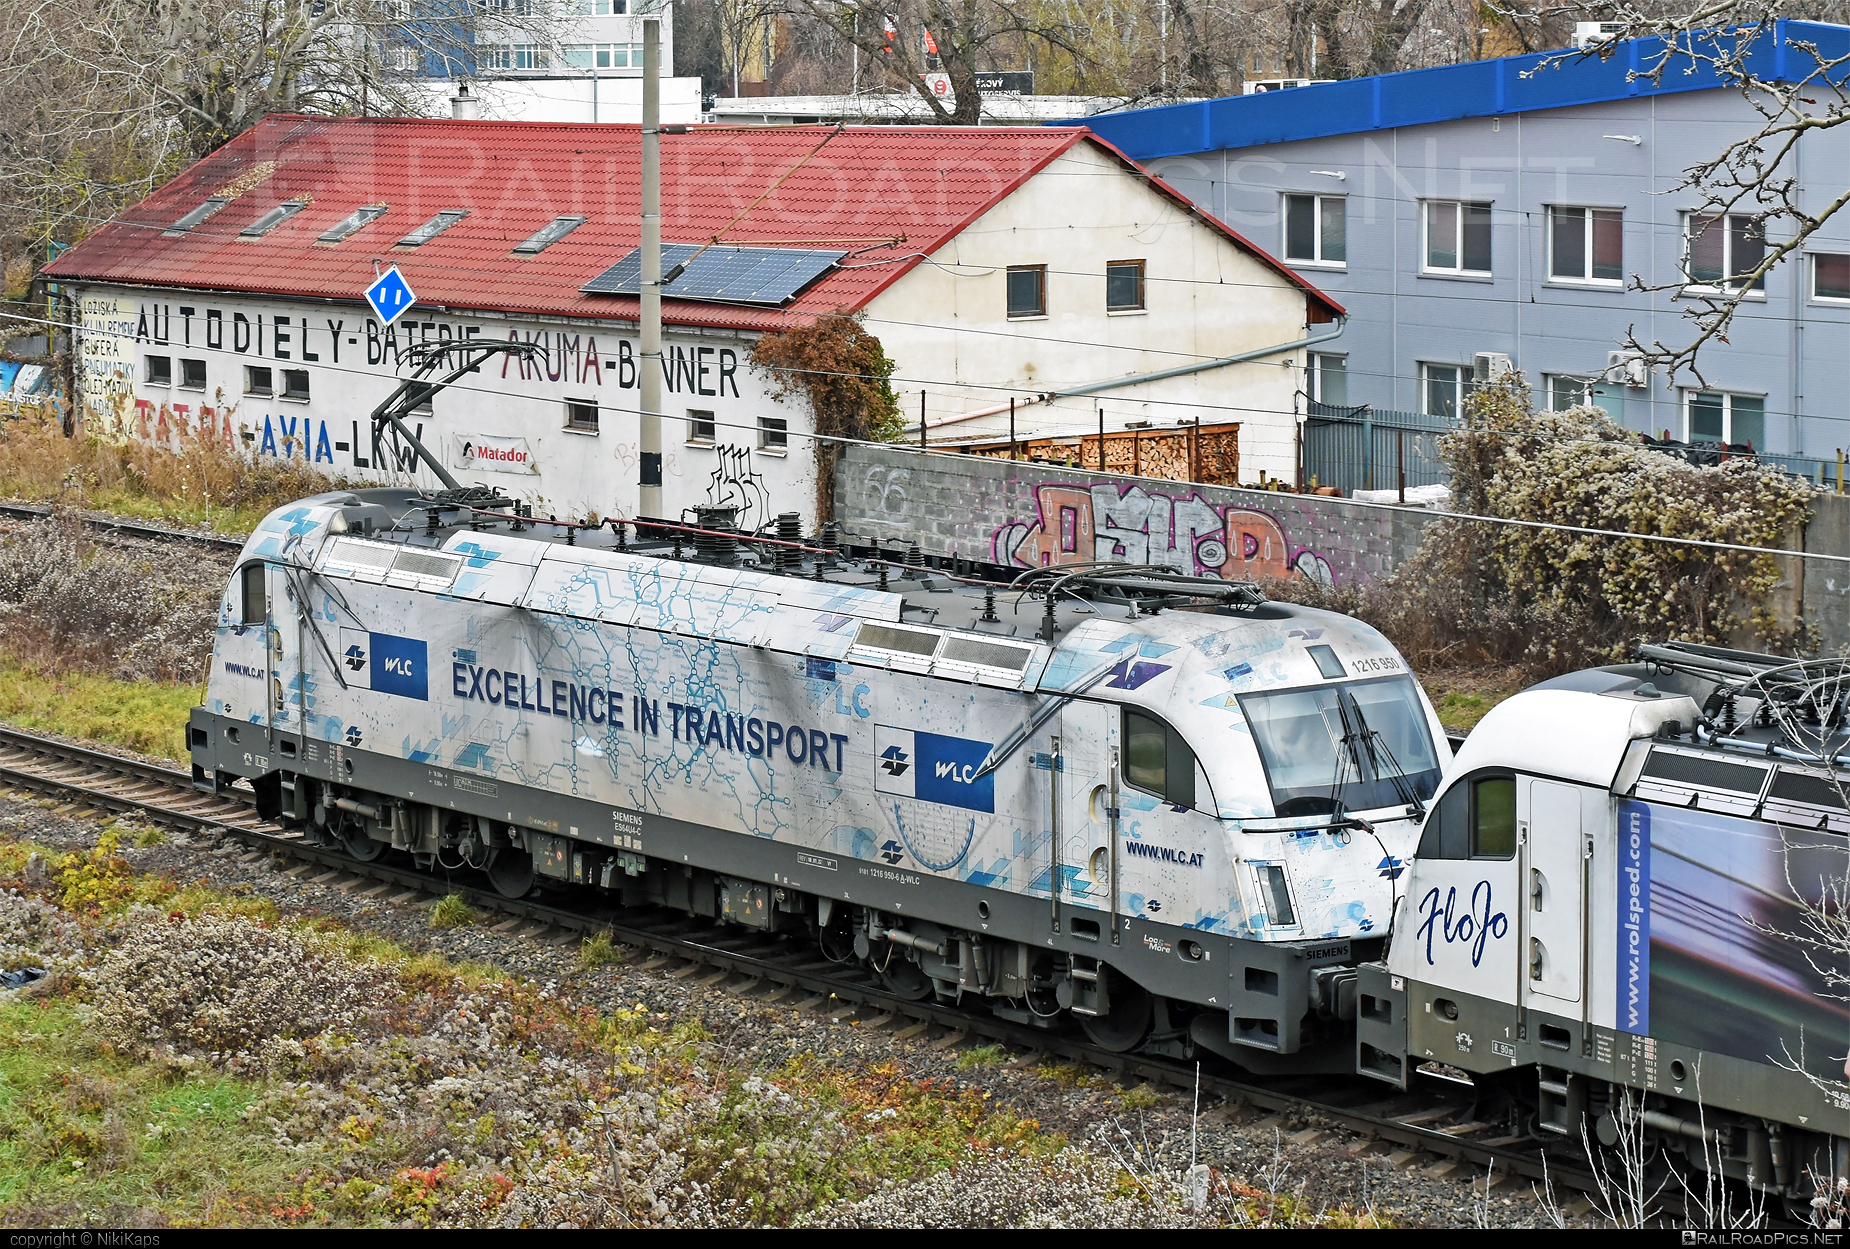 Siemens ES 64 U4 - 1216 950 operated by Wiener Lokalbahnen Cargo GmbH #es64 #es64u4 #eurosprinter #siemens #siemensEs64 #siemensEs64u4 #siemenstaurus #taurus #tauruslocomotive #wienerlokalbahnencargo #wienerlokalbahnencargogmbh #wlc